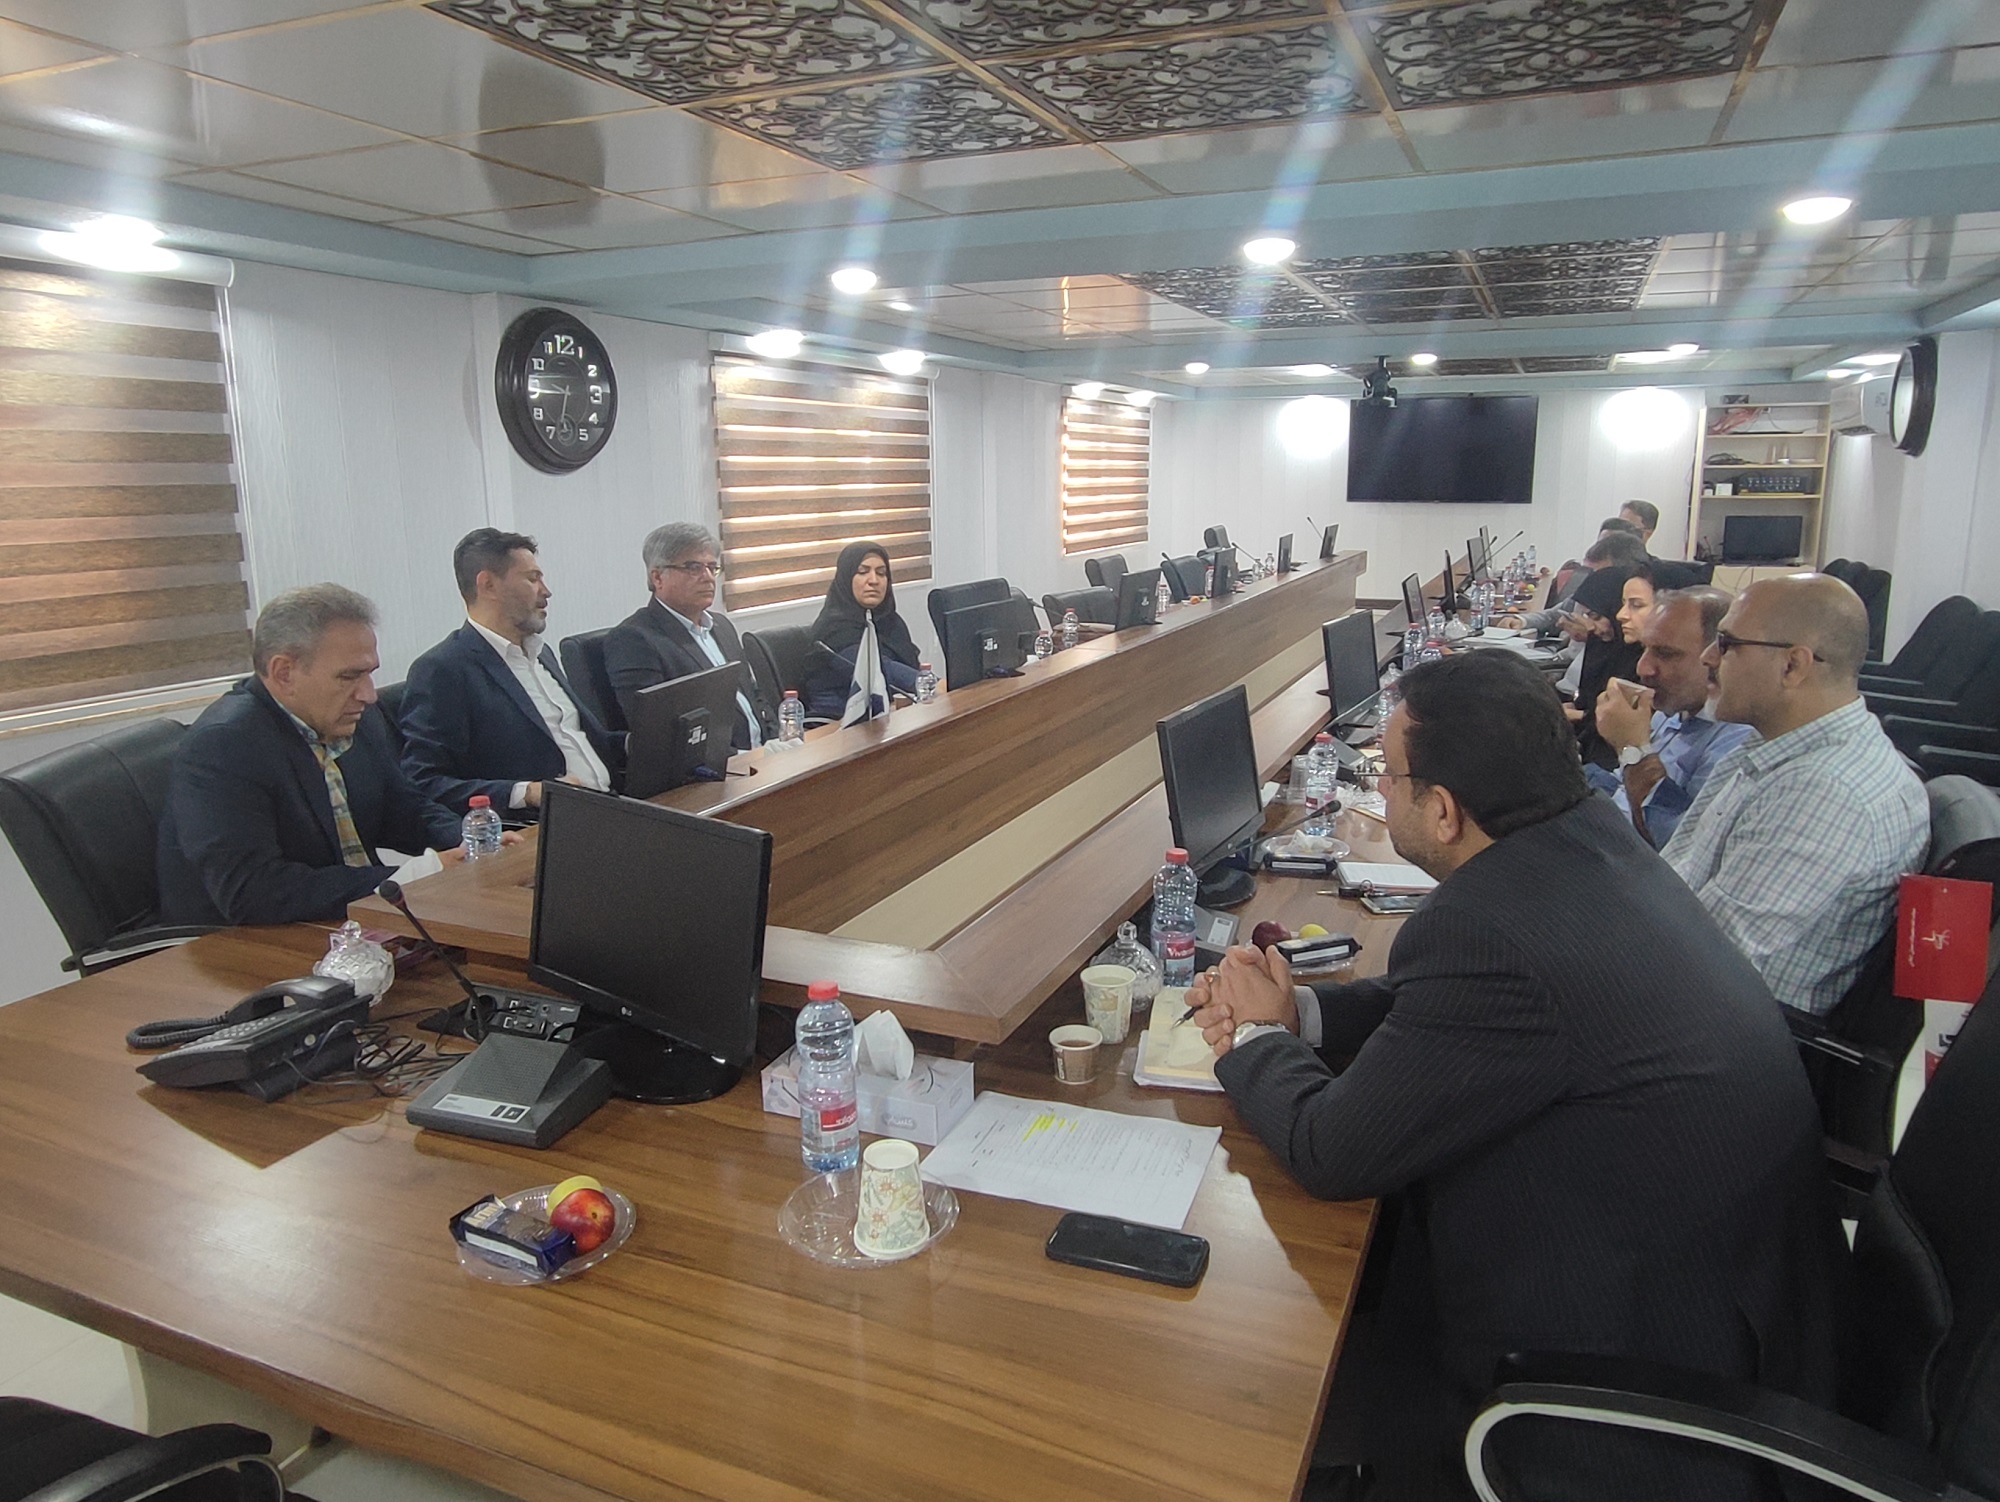 برگزاری جلسه مشترك مدیران بیمه دانا با صنعت آب و برق استان بوشهر